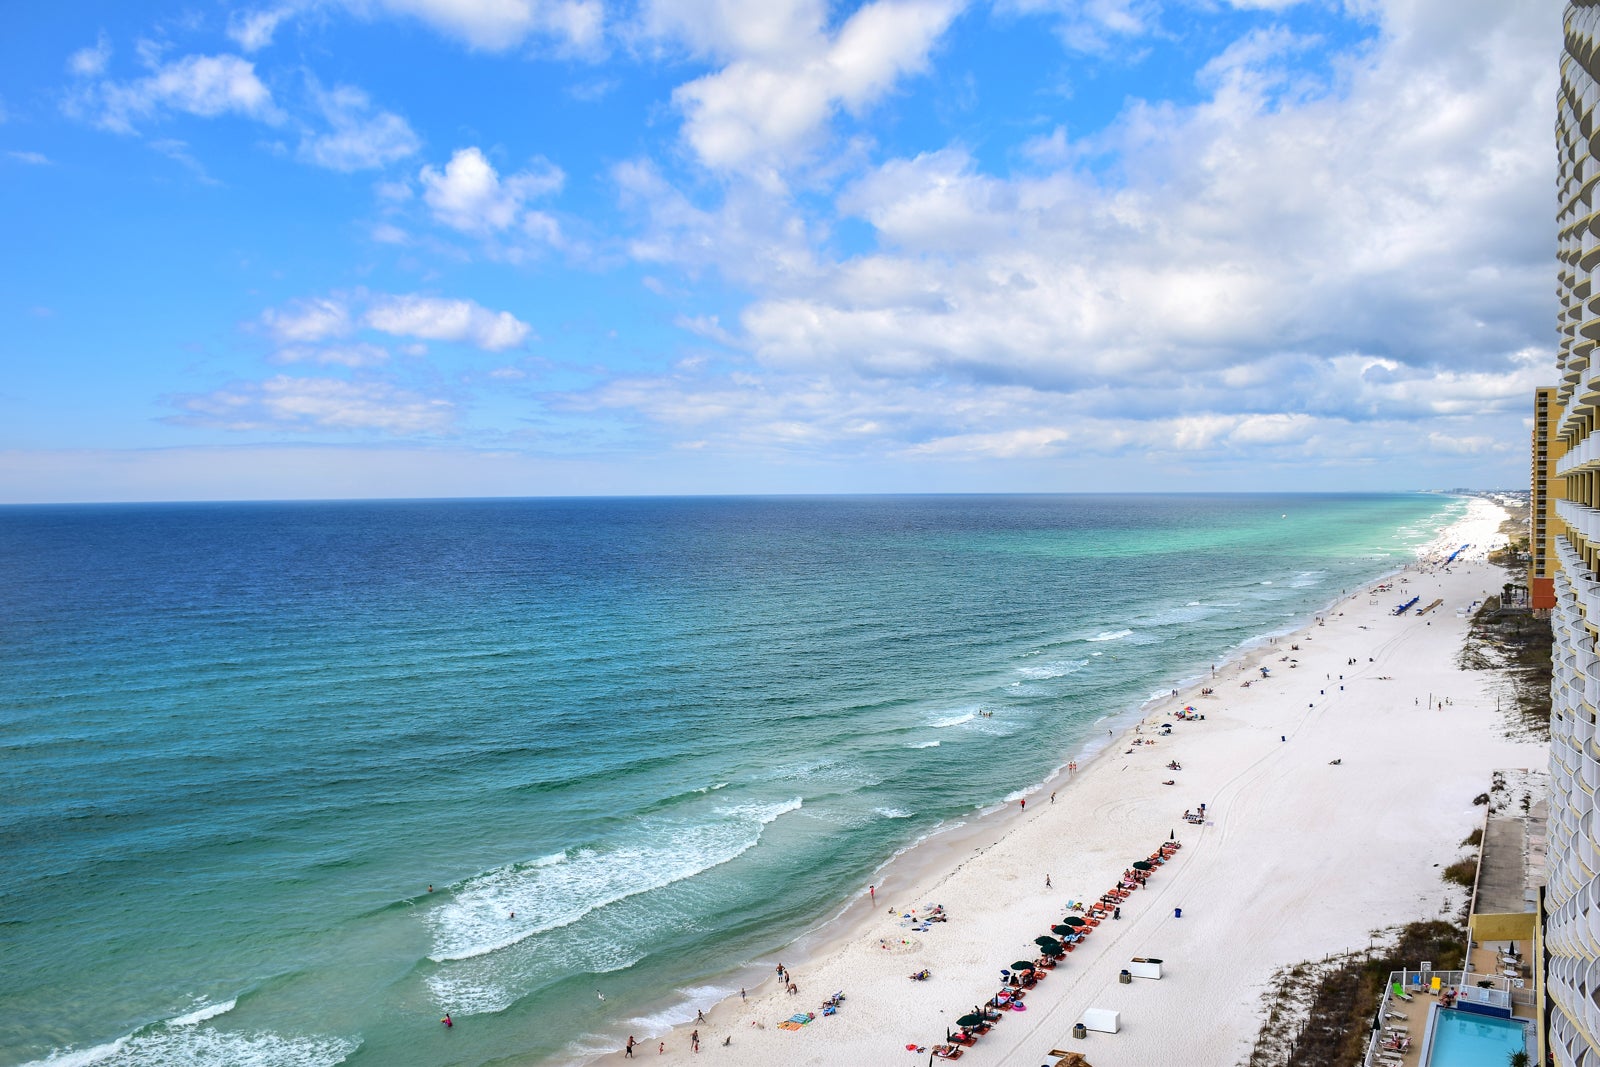 An aerial beach view of Destin, Florida.